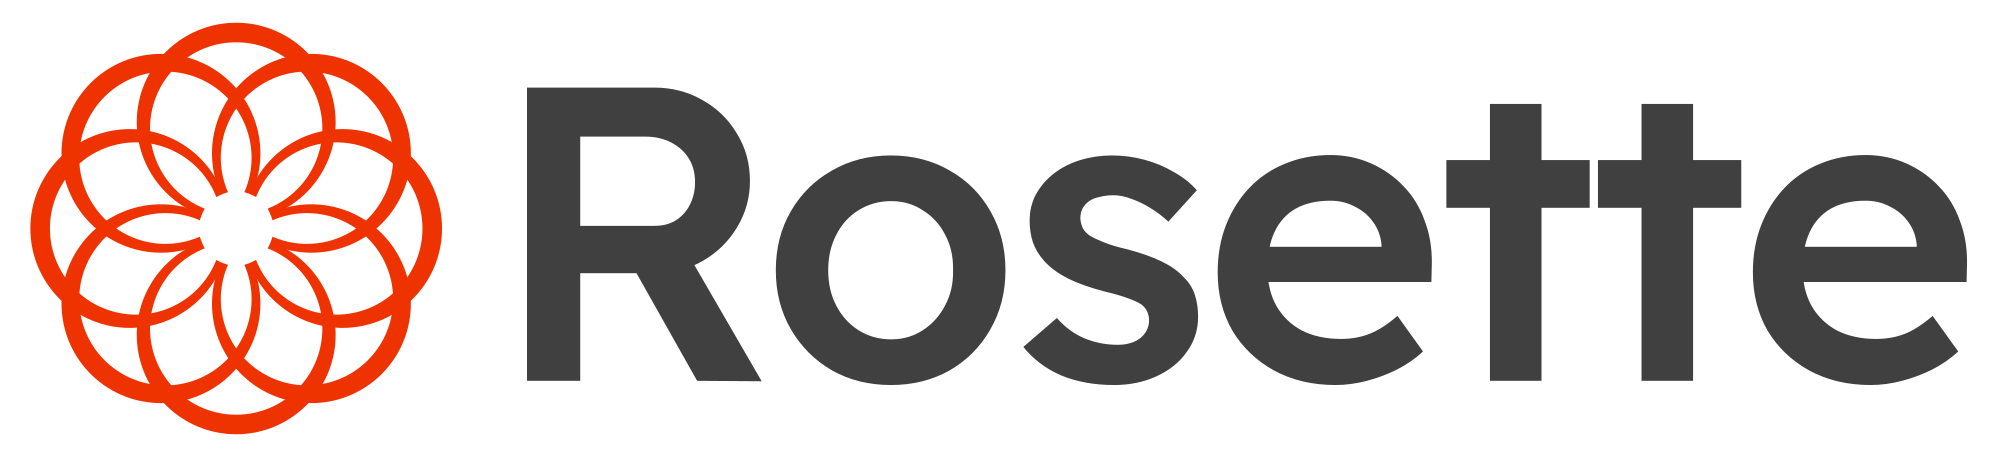 Rosette logo (SVG)